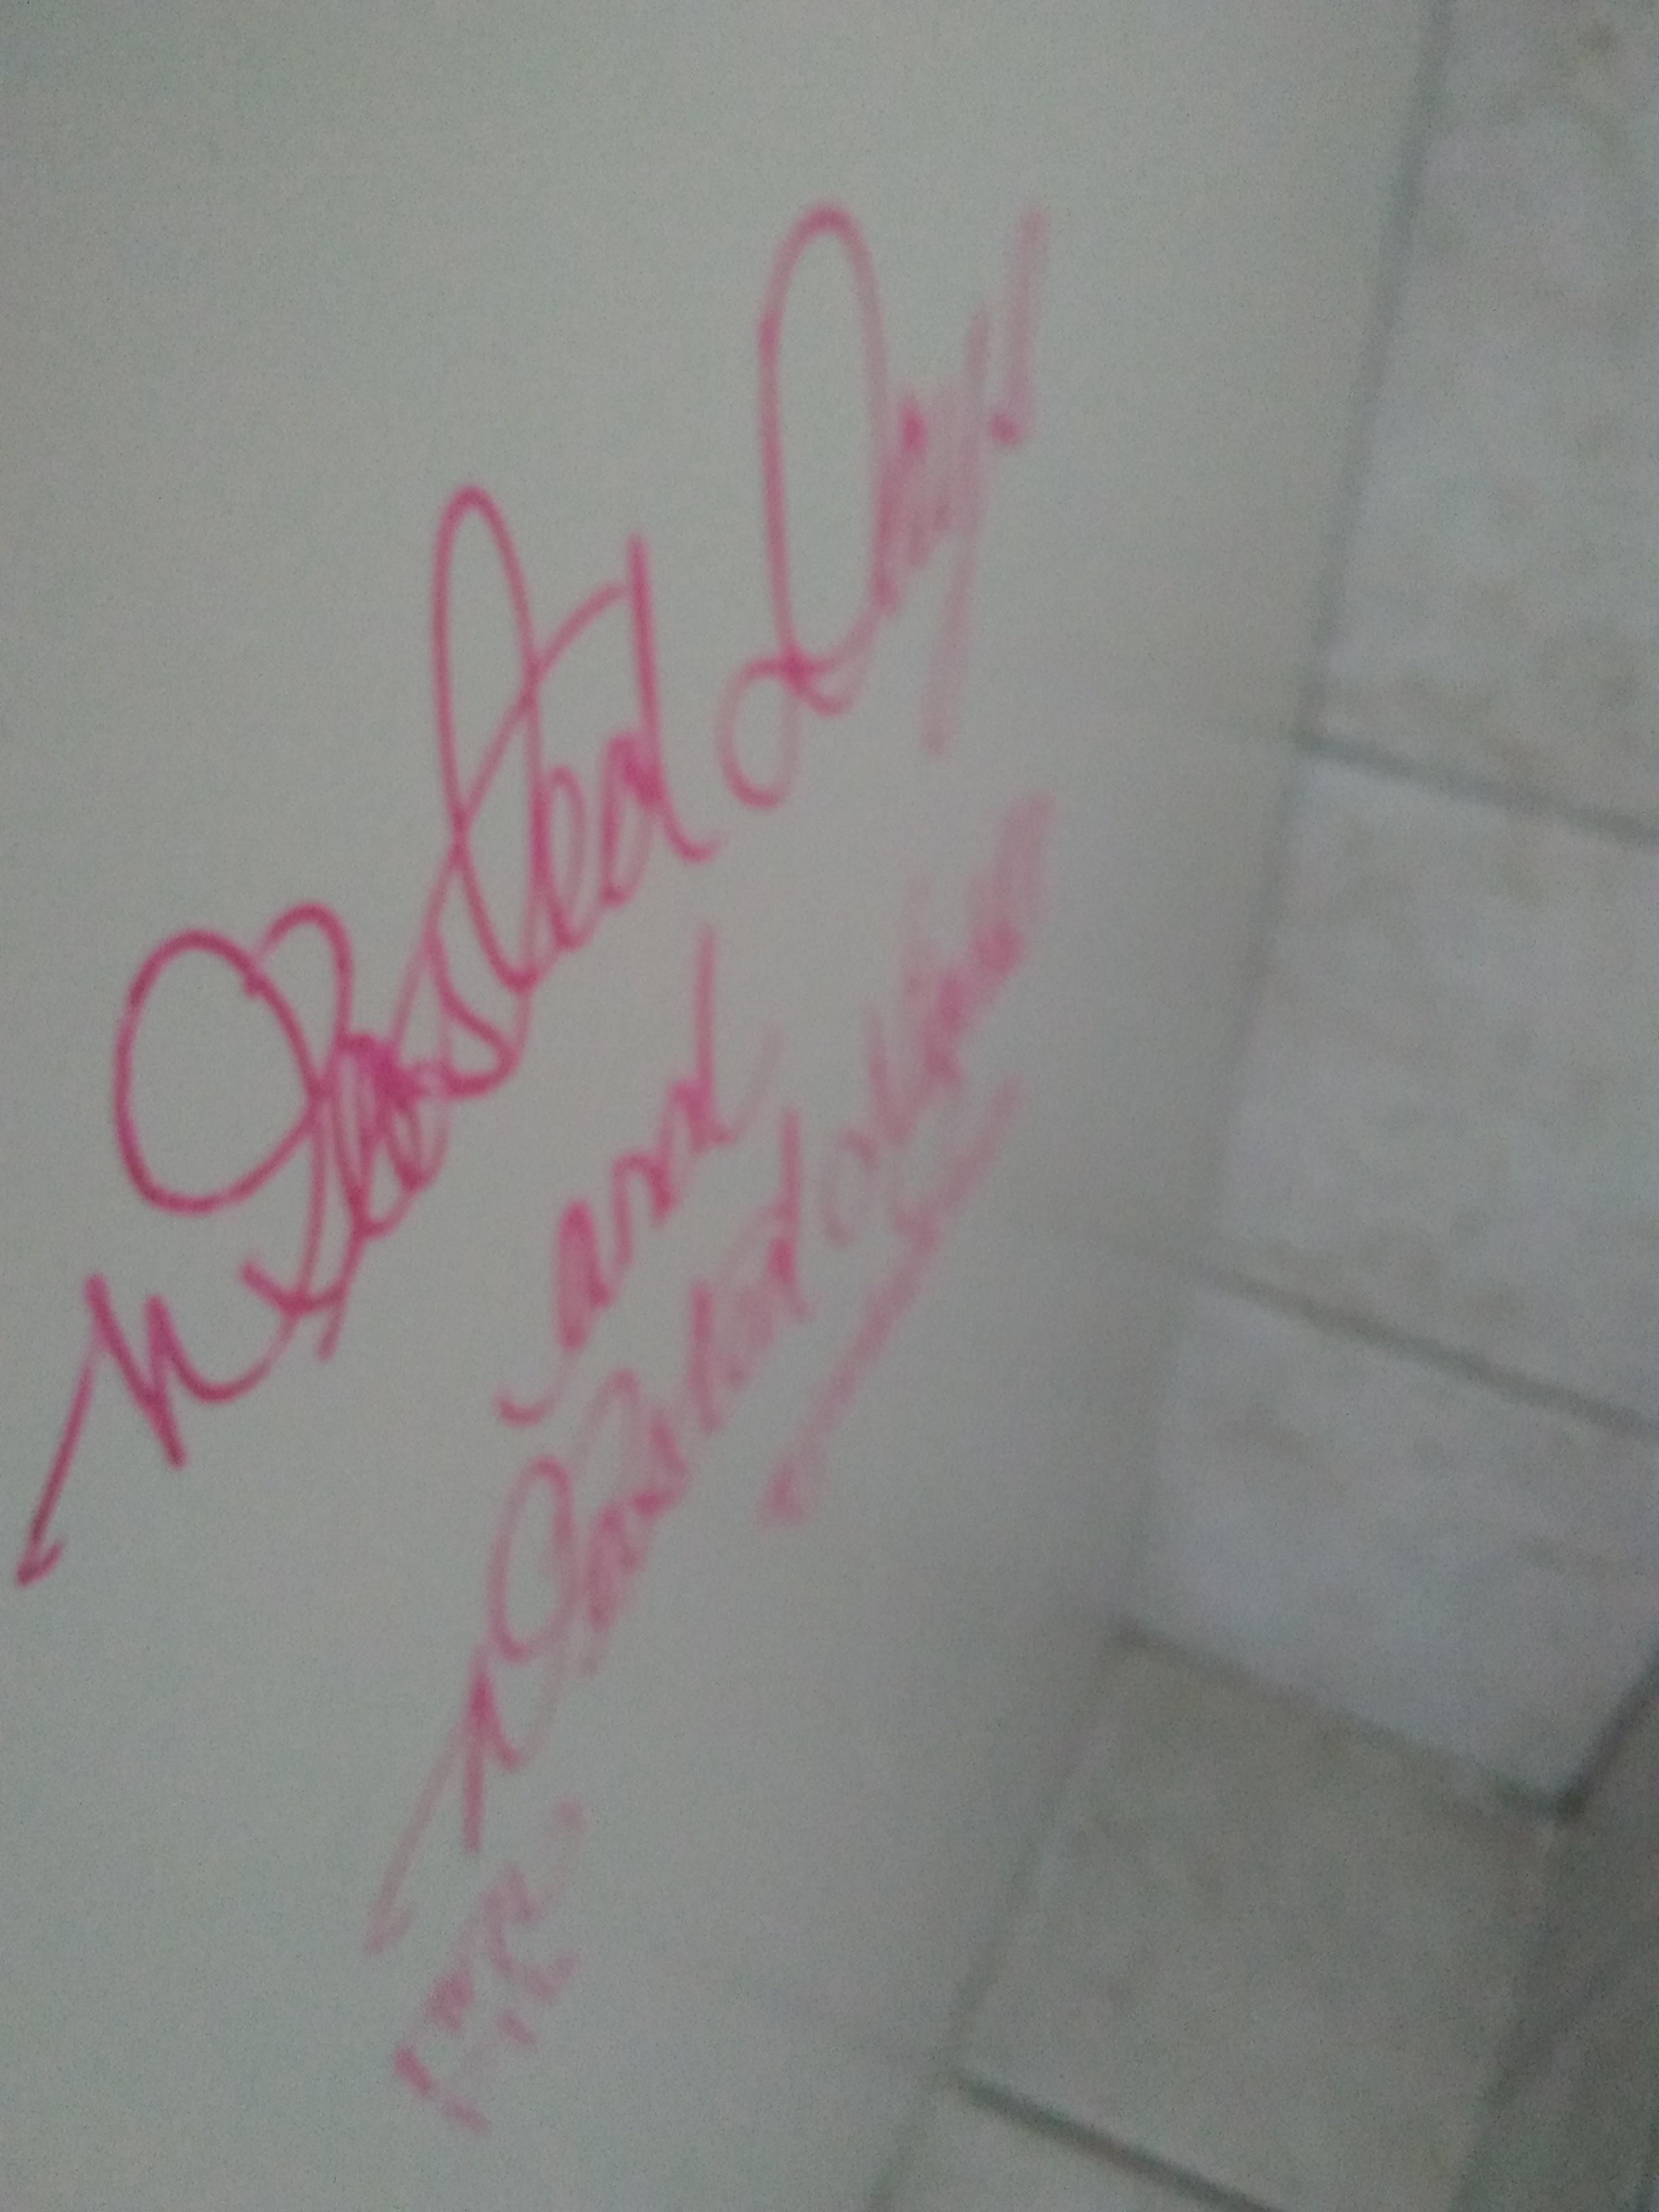 Graffatti in one of the bathrooms